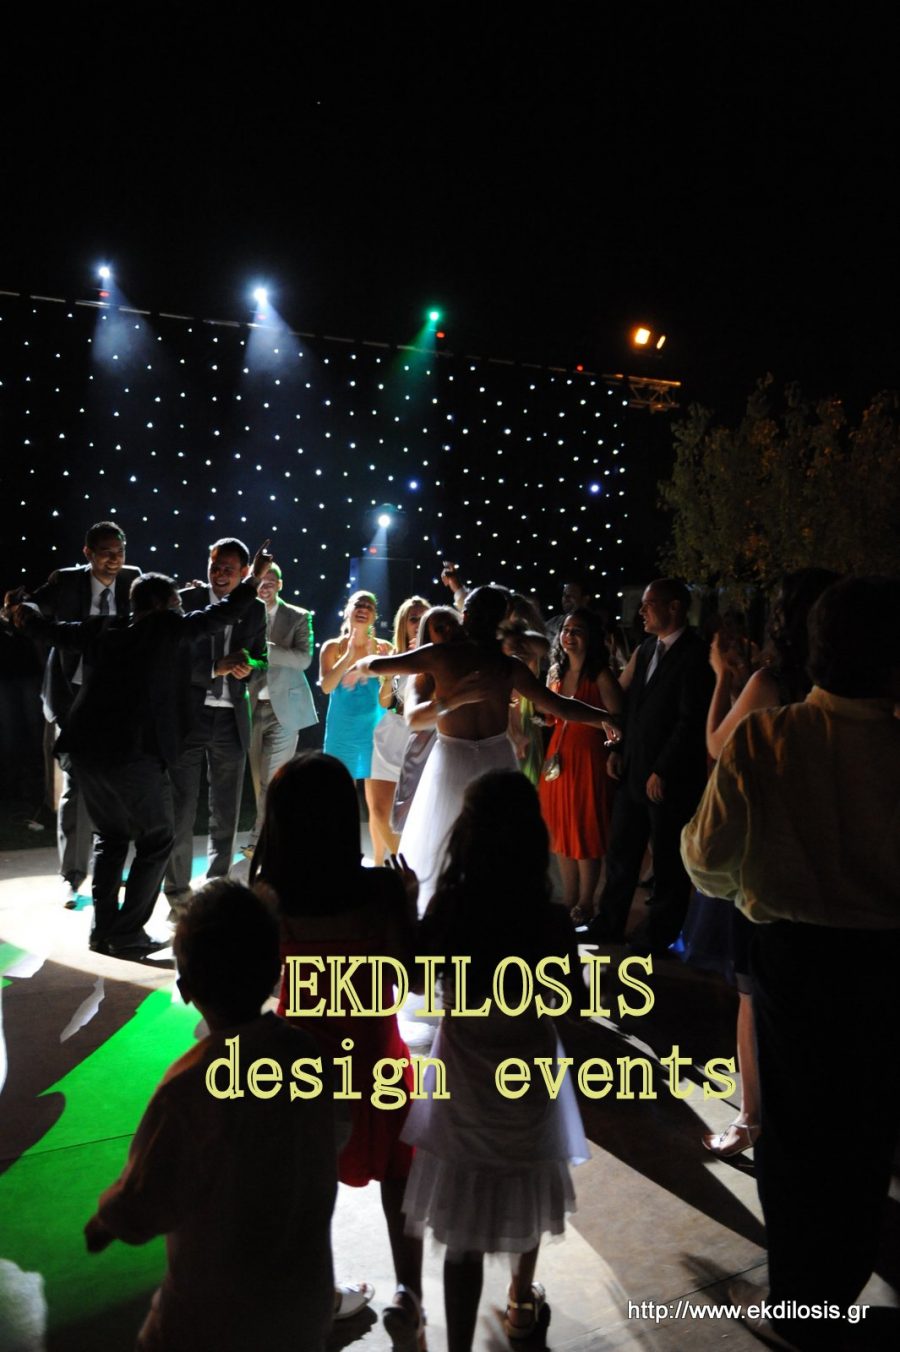 κοινωνικές, εταιρικές εκδηλώσεις & πάρτι με dj από την EKDILOSIS event production